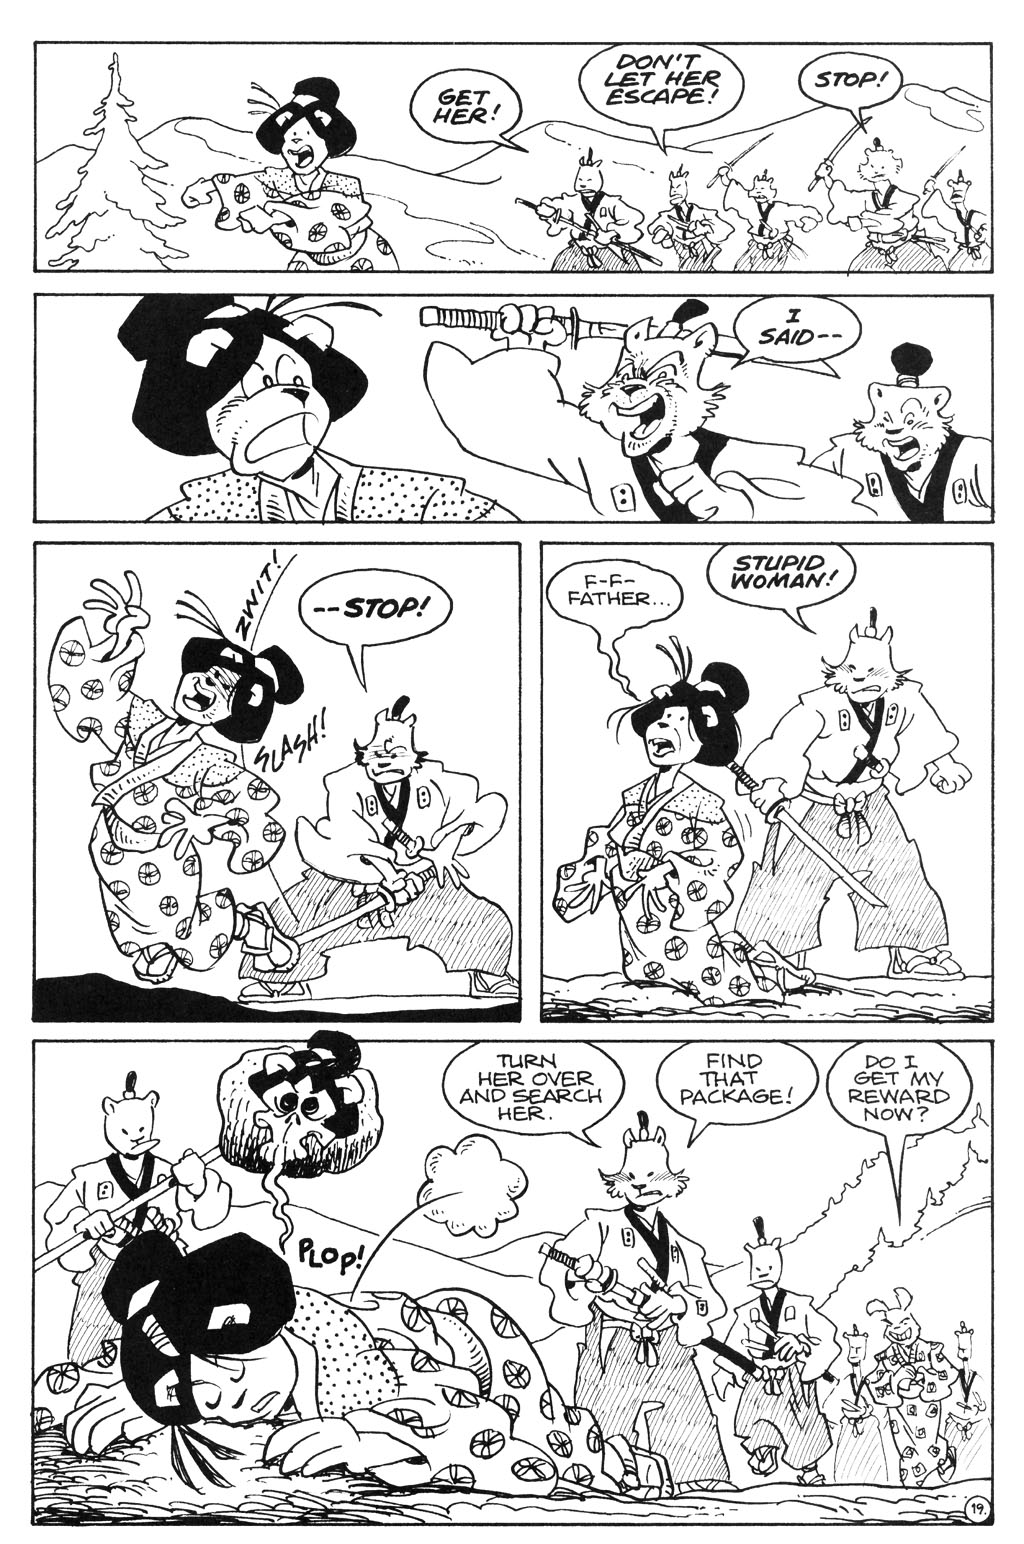 Usagi Yojimbo V3 076 Read Usagi Yojimbo V3 076 Comic Online In High